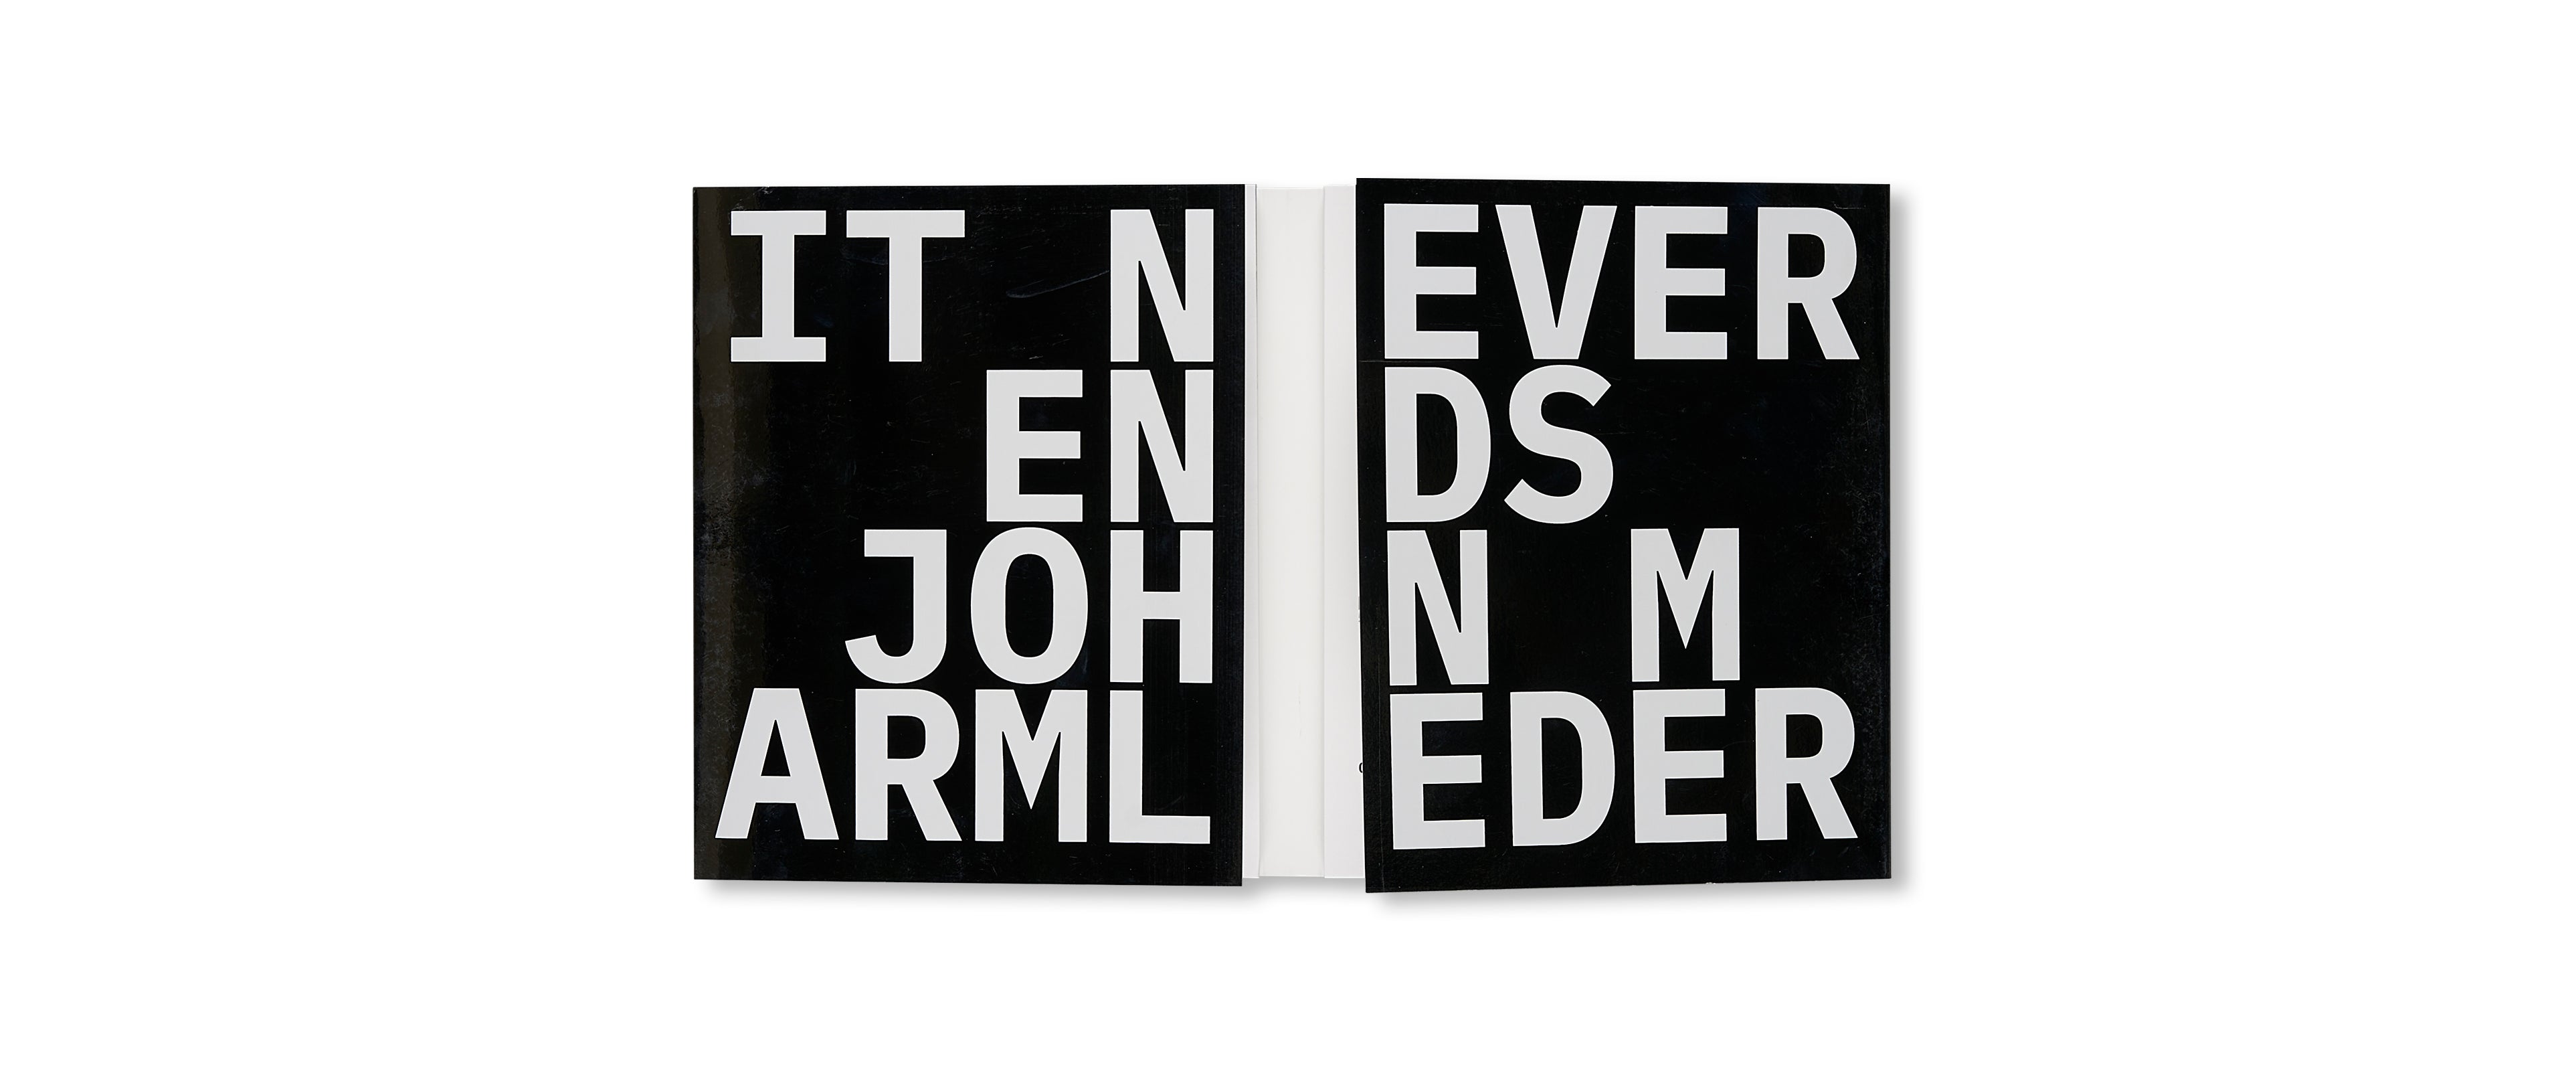 IT NEVER ENDS by John Armleder